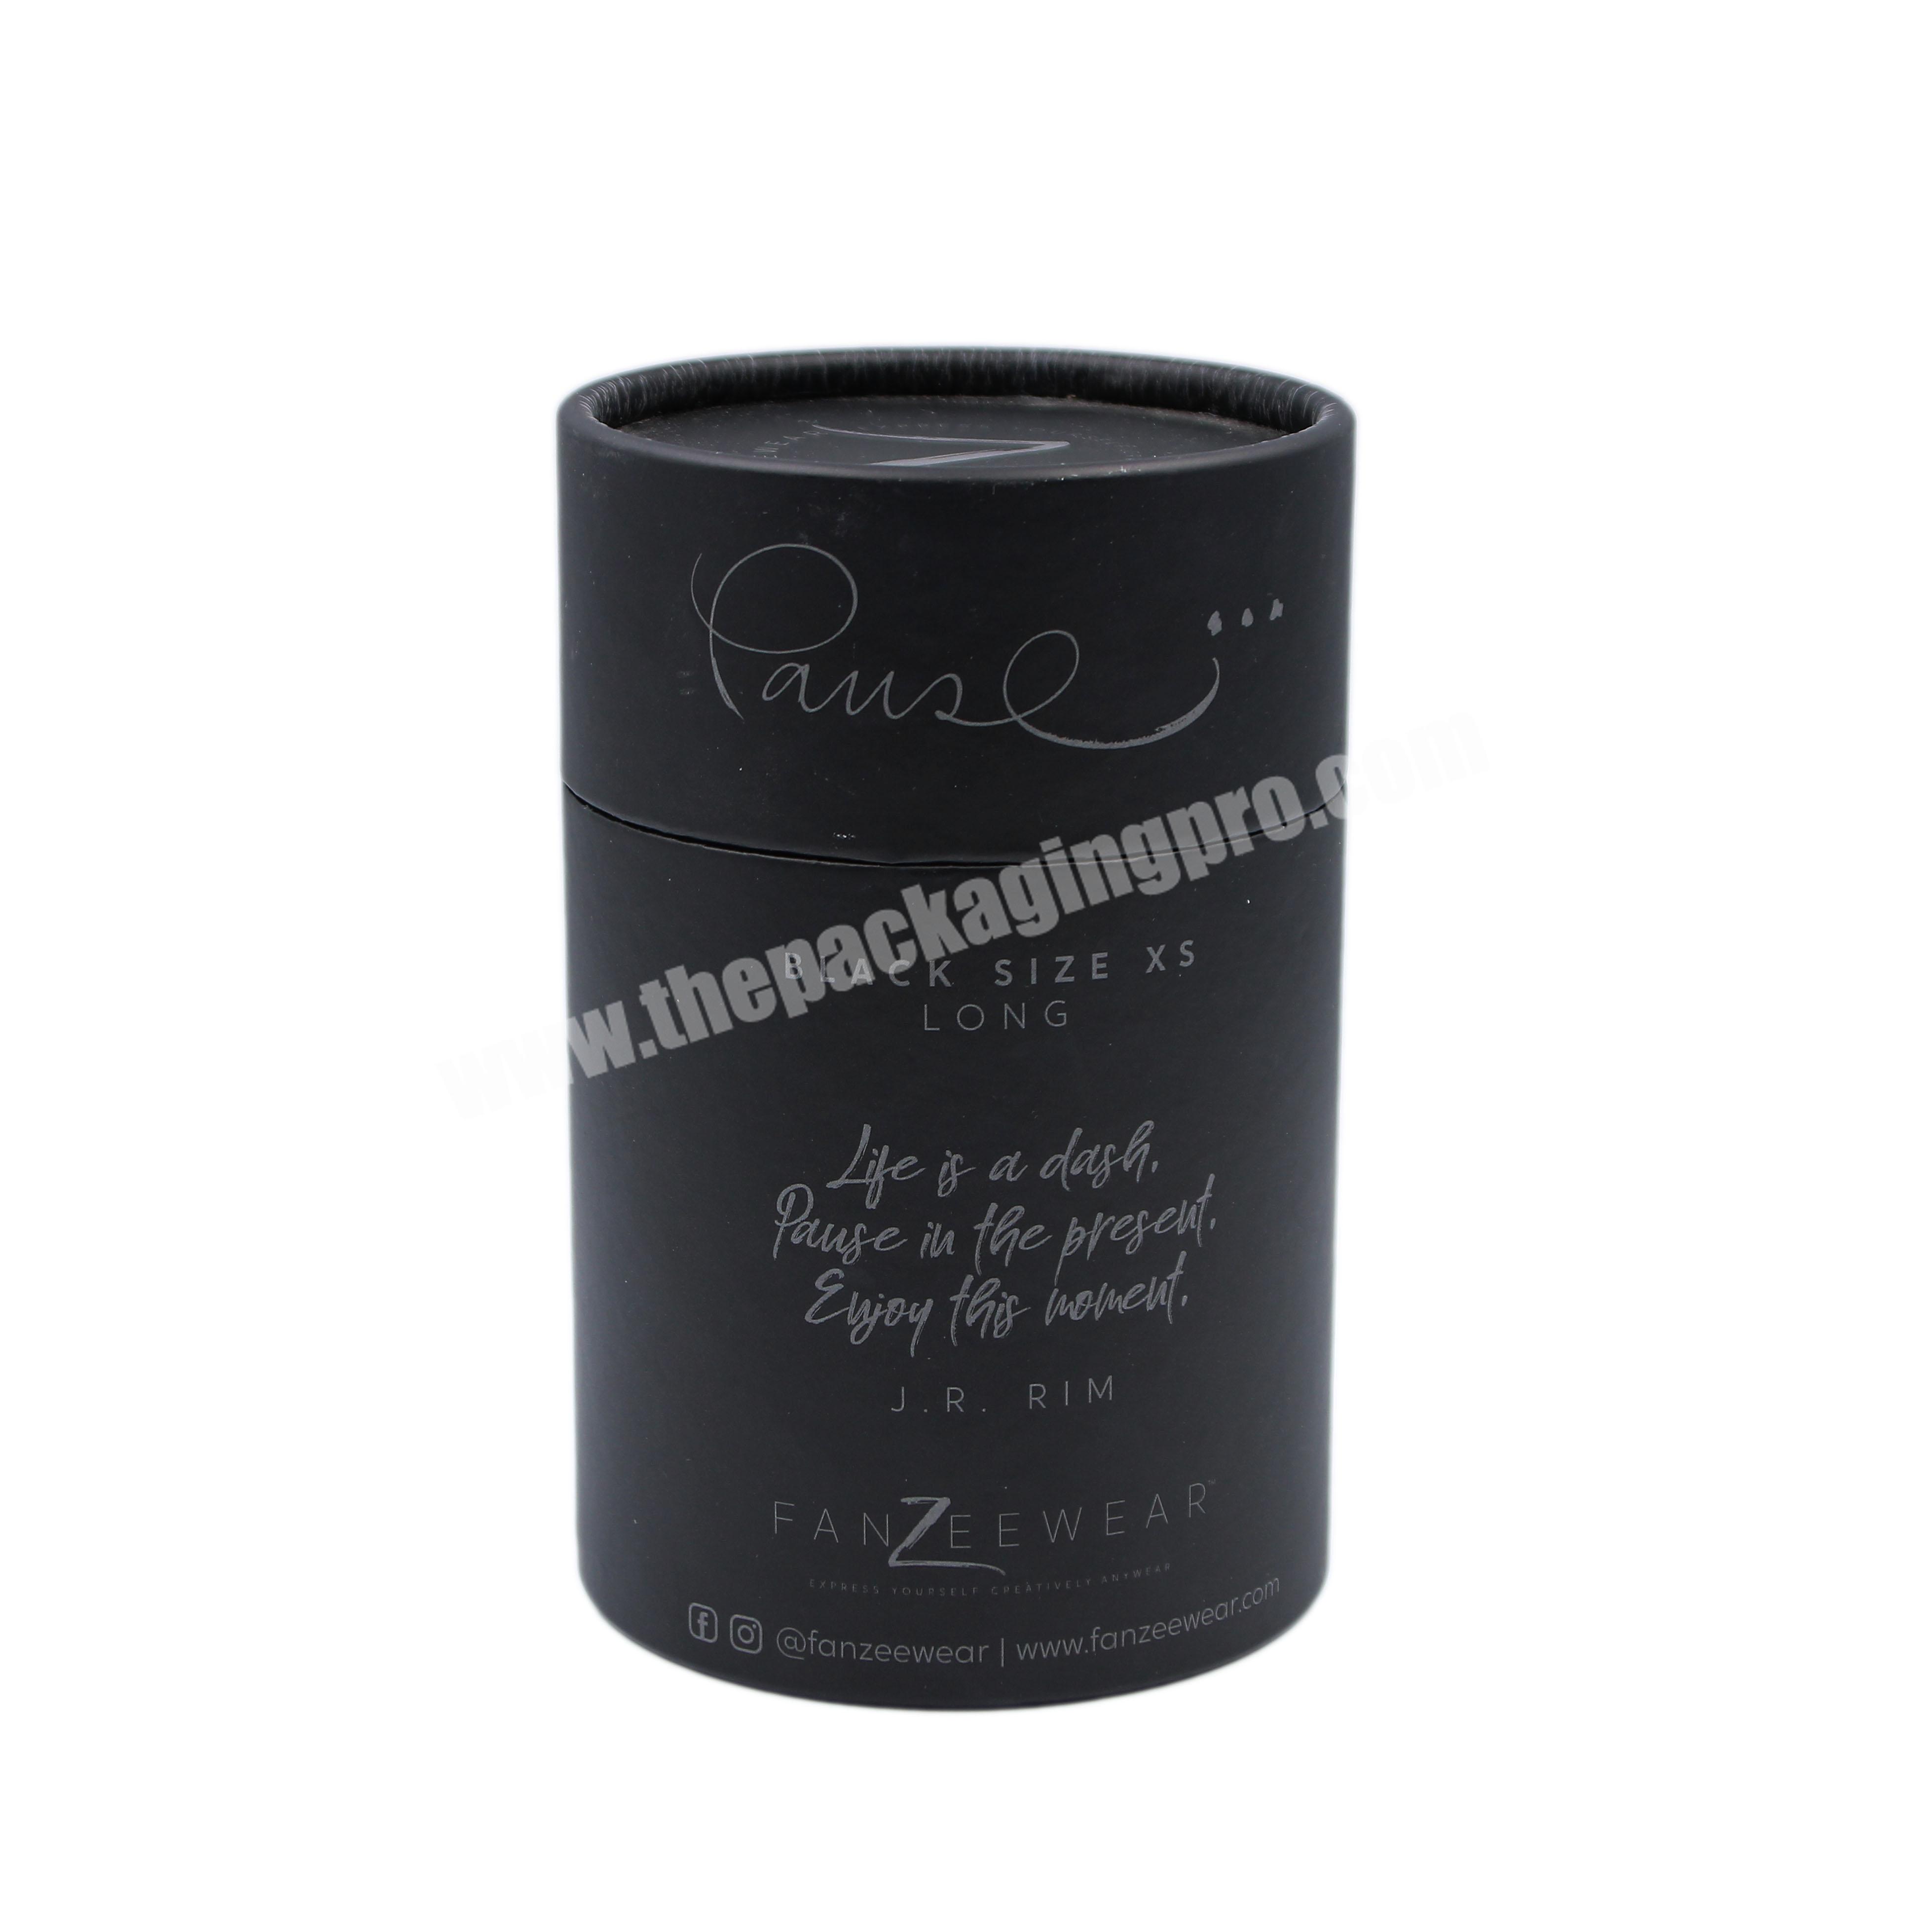 Brush Whisky Bottle Round Box Beauty Blender Coffee Bean Luxury Paper Tube For Lip Balm Packaging